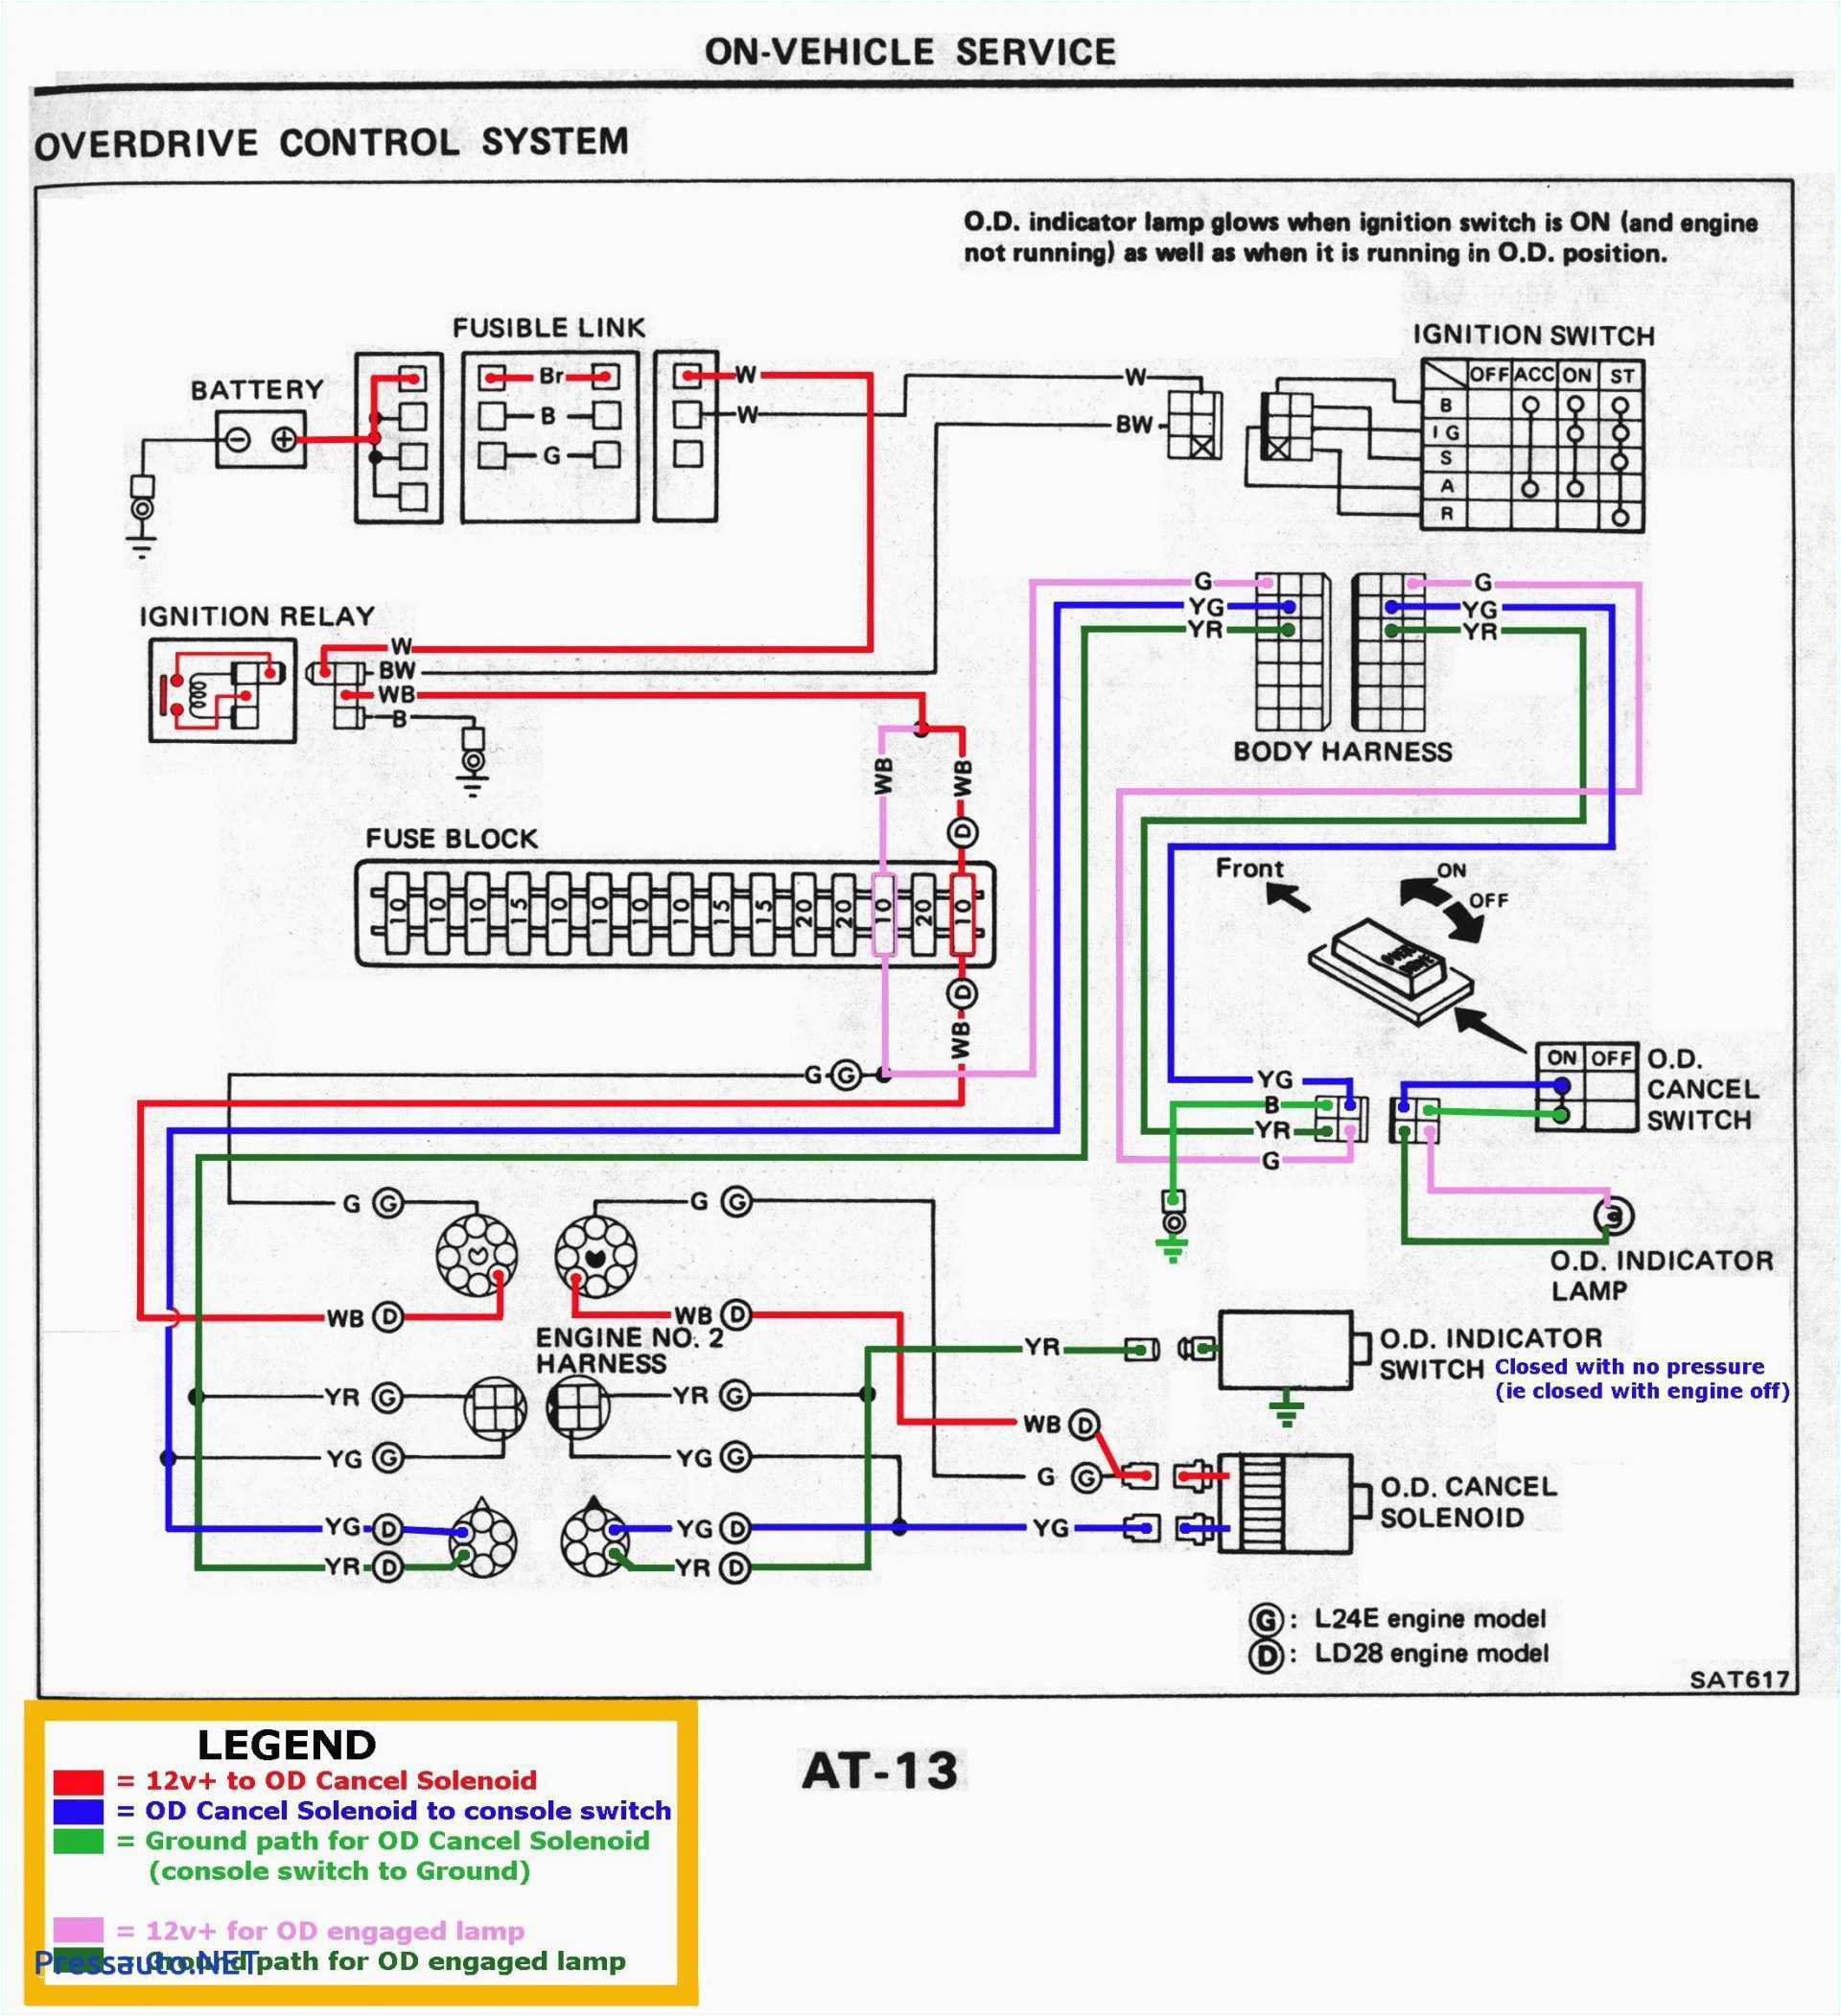 4 star horse trailer wiring diagram lovely wiring diagram for trailer plug in 2019 wiring diagram for horse jpg